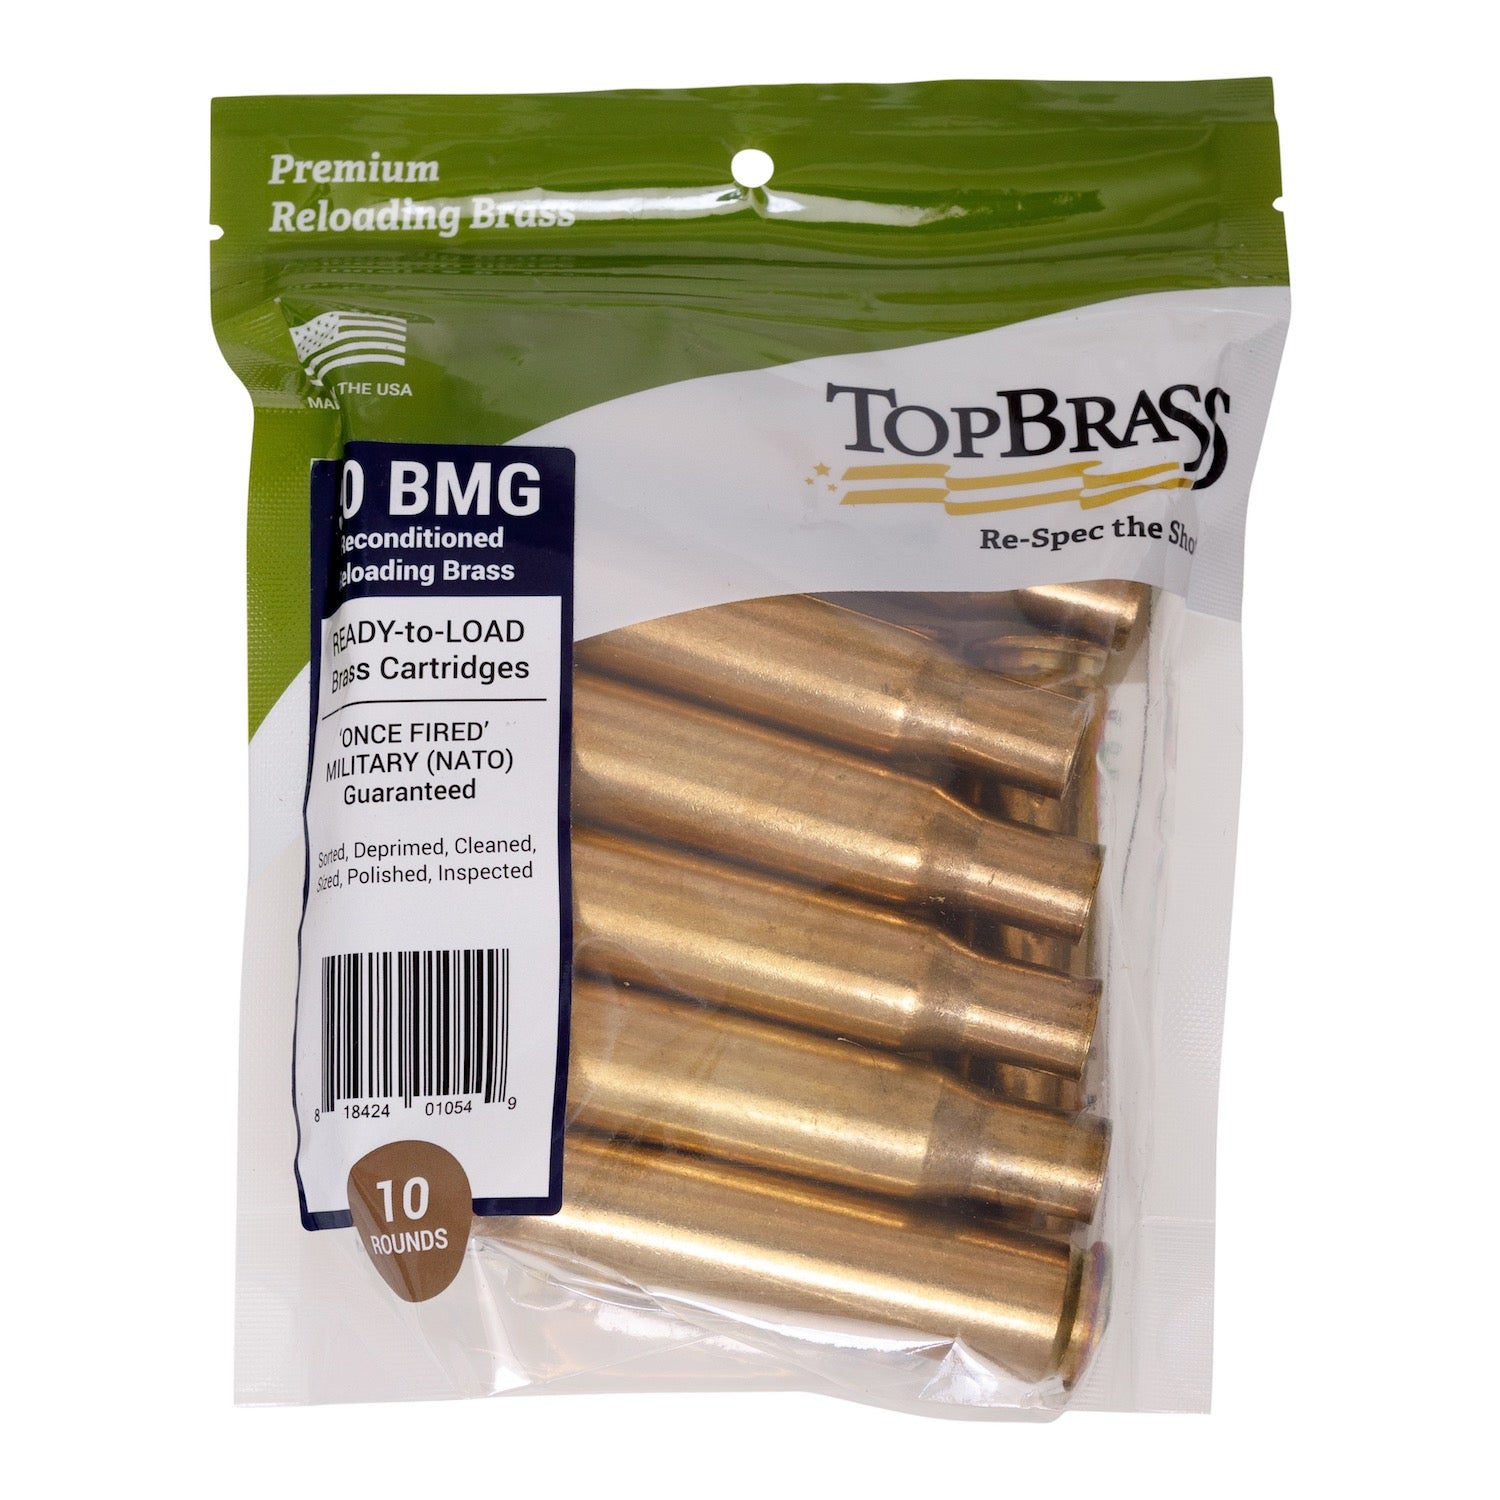 Rifle Brass – Top Brass Reloading Supplies